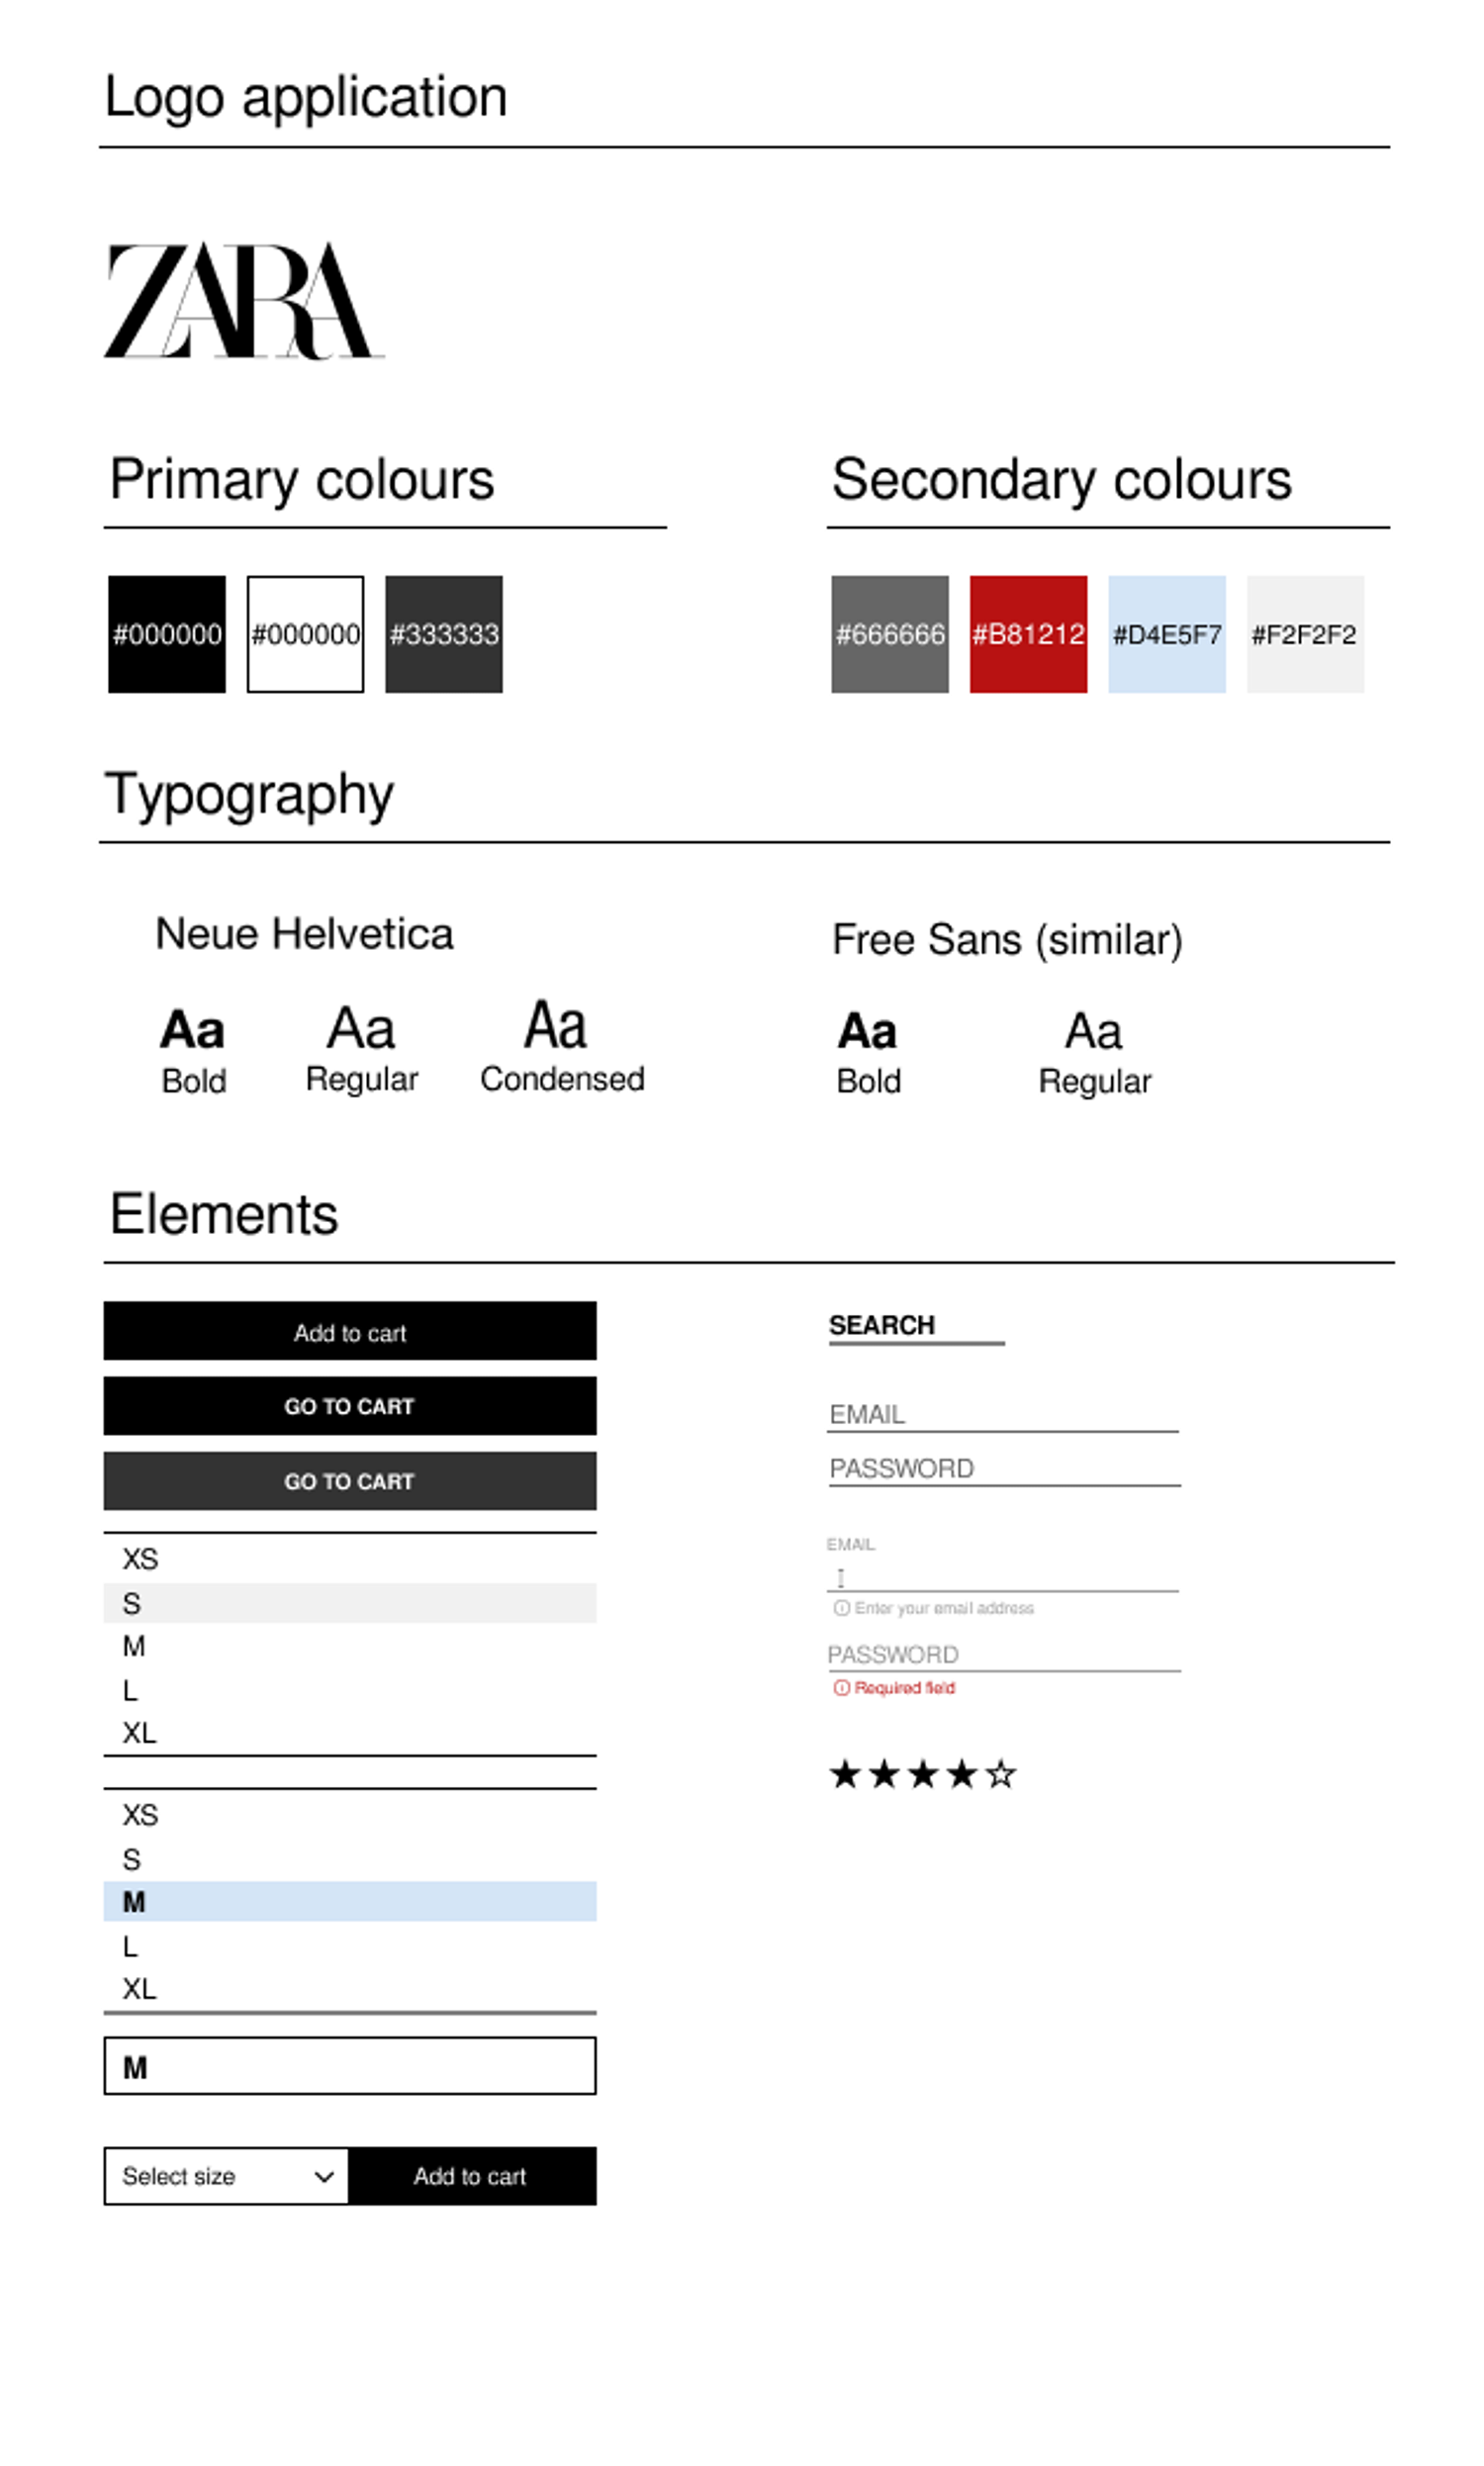 Guia de estilos incluindo aplicação de logo, cores primárias e secundárias, tipografia e elementos visuais